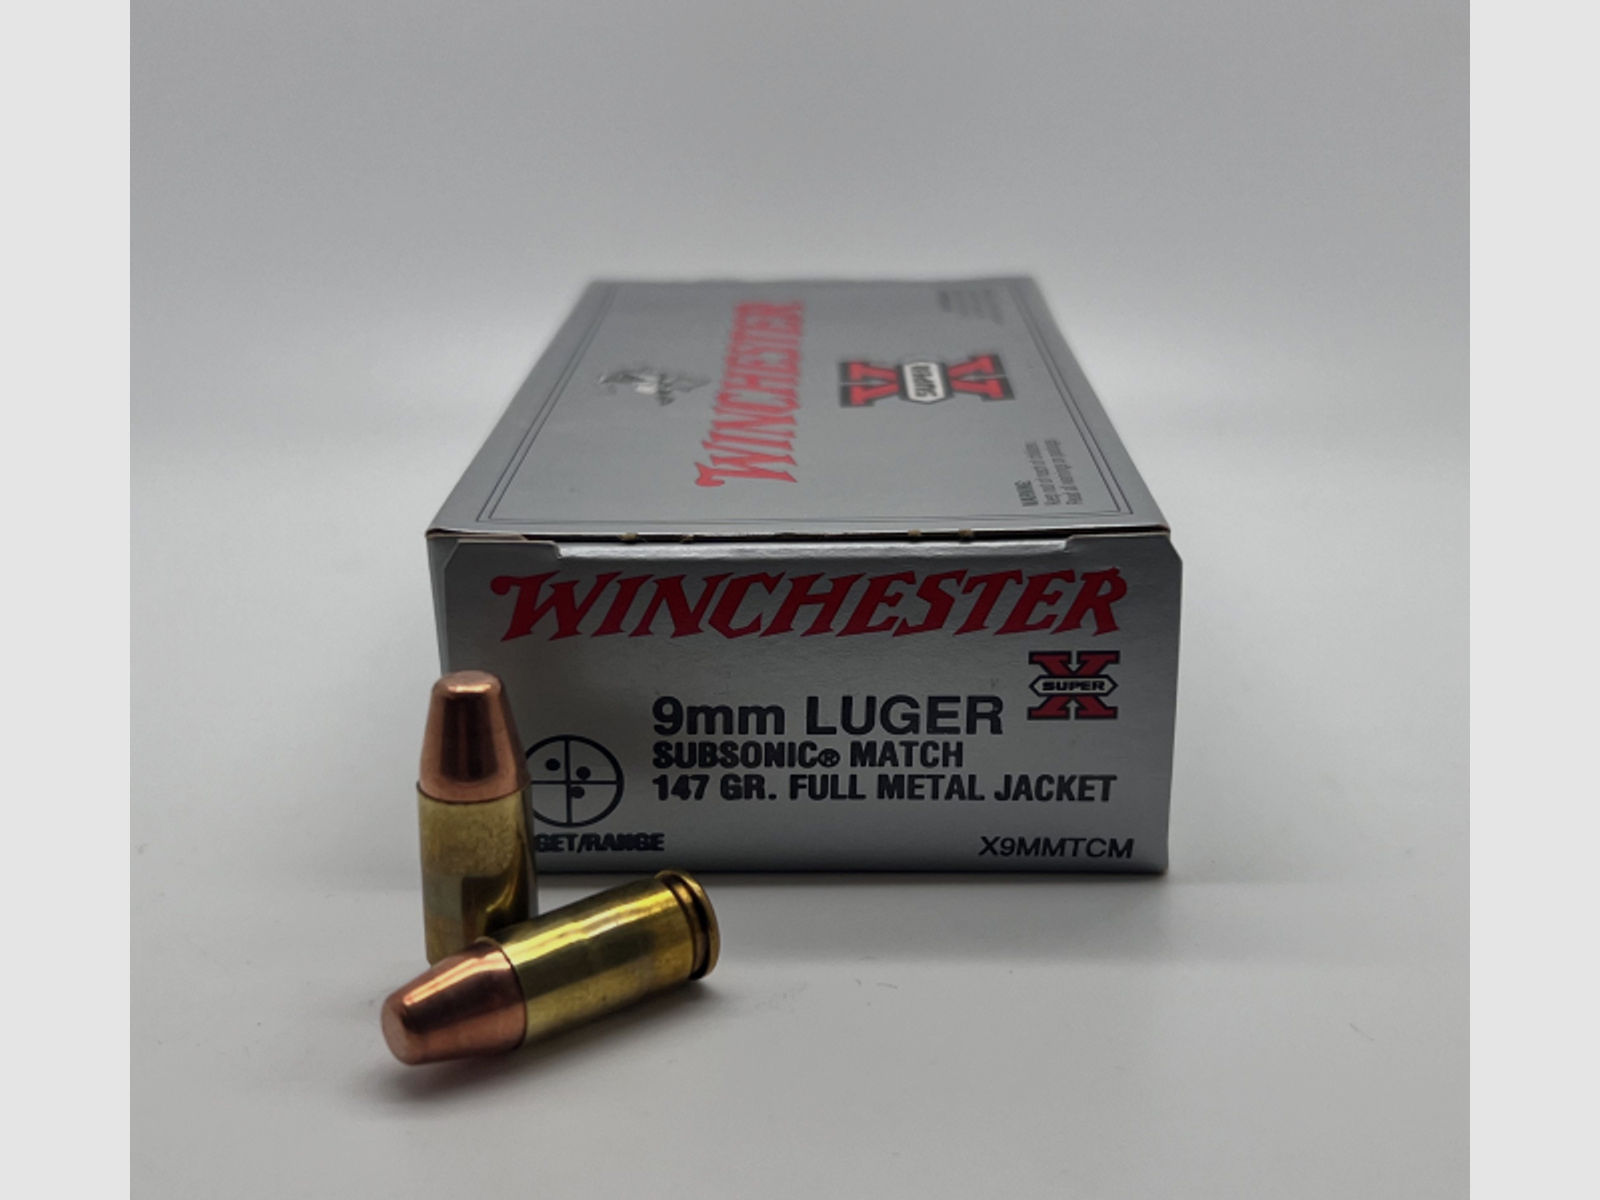 9mm Luger Winchester subsonic match VM full metal jacket 147gr - 500 Schuss